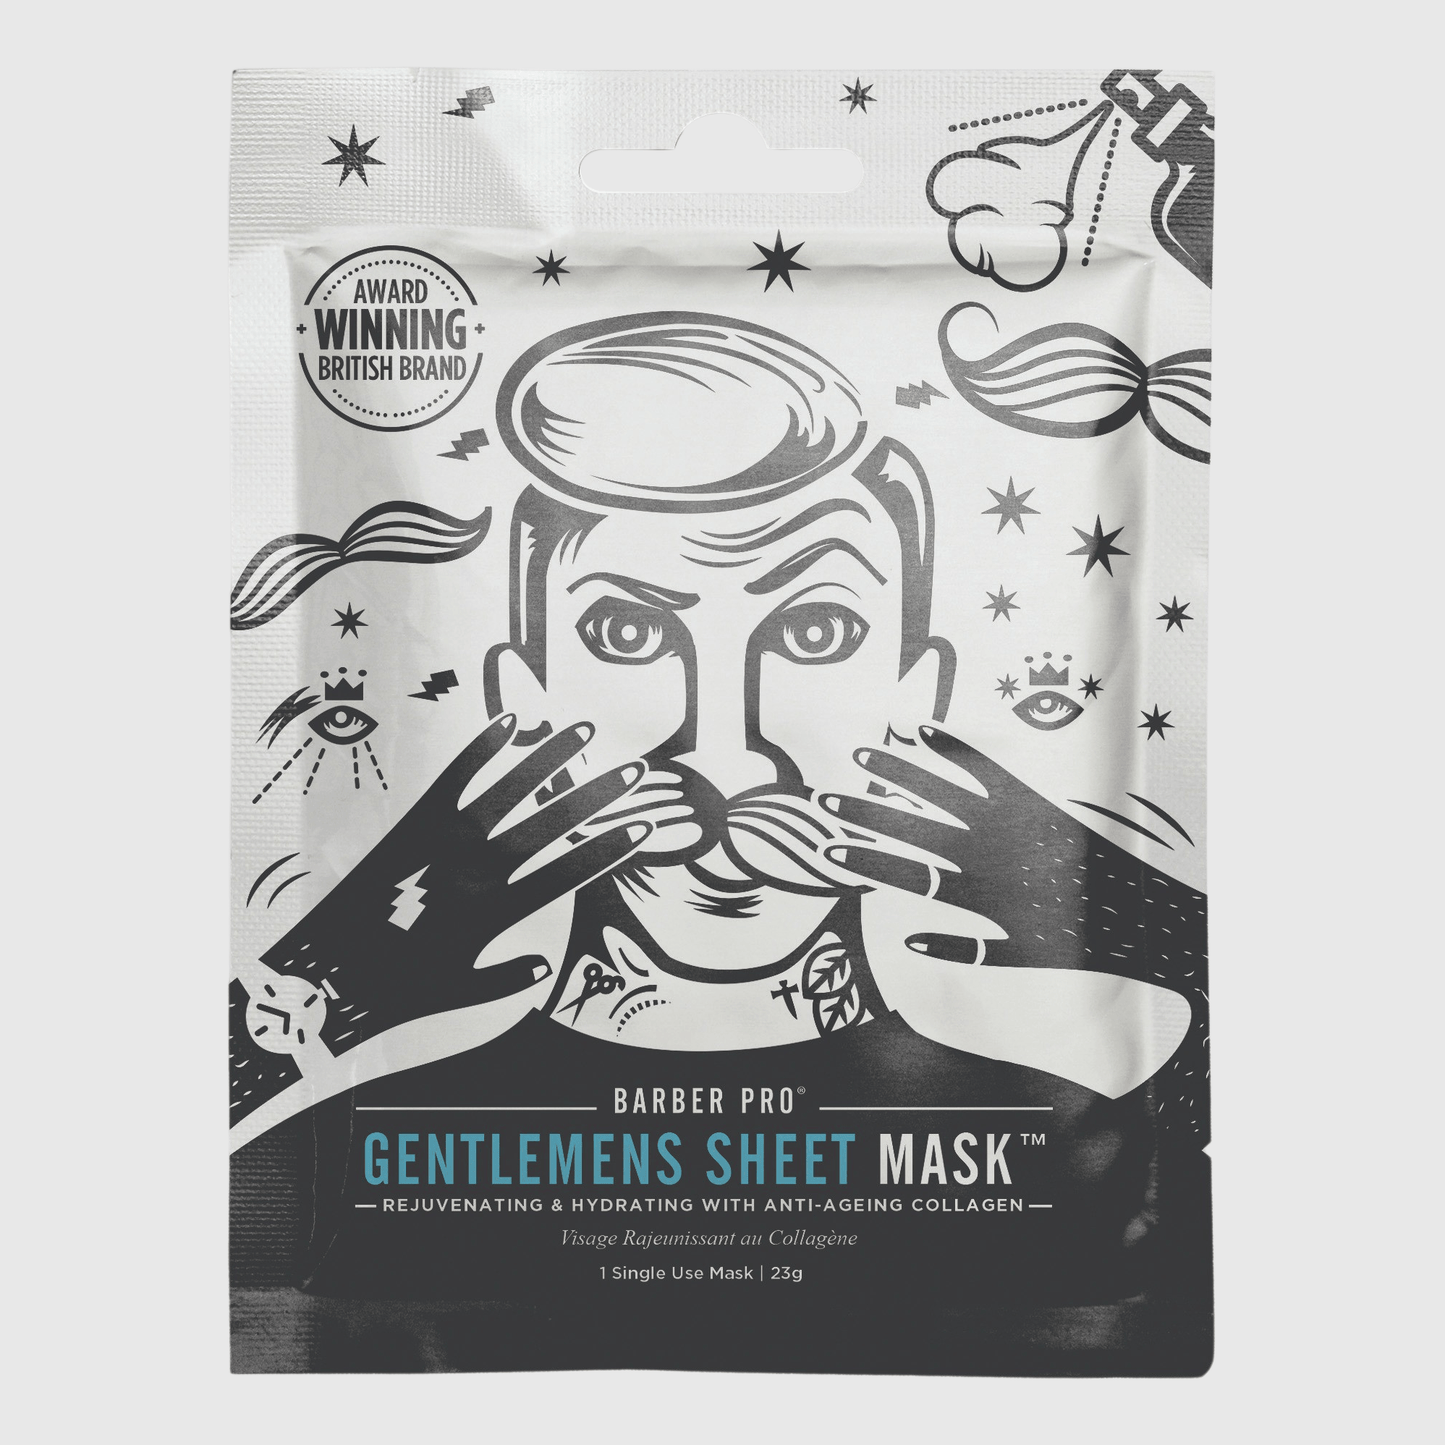 Barber Pro Gentlemen's Sheet Mask Skin Barber Pro 